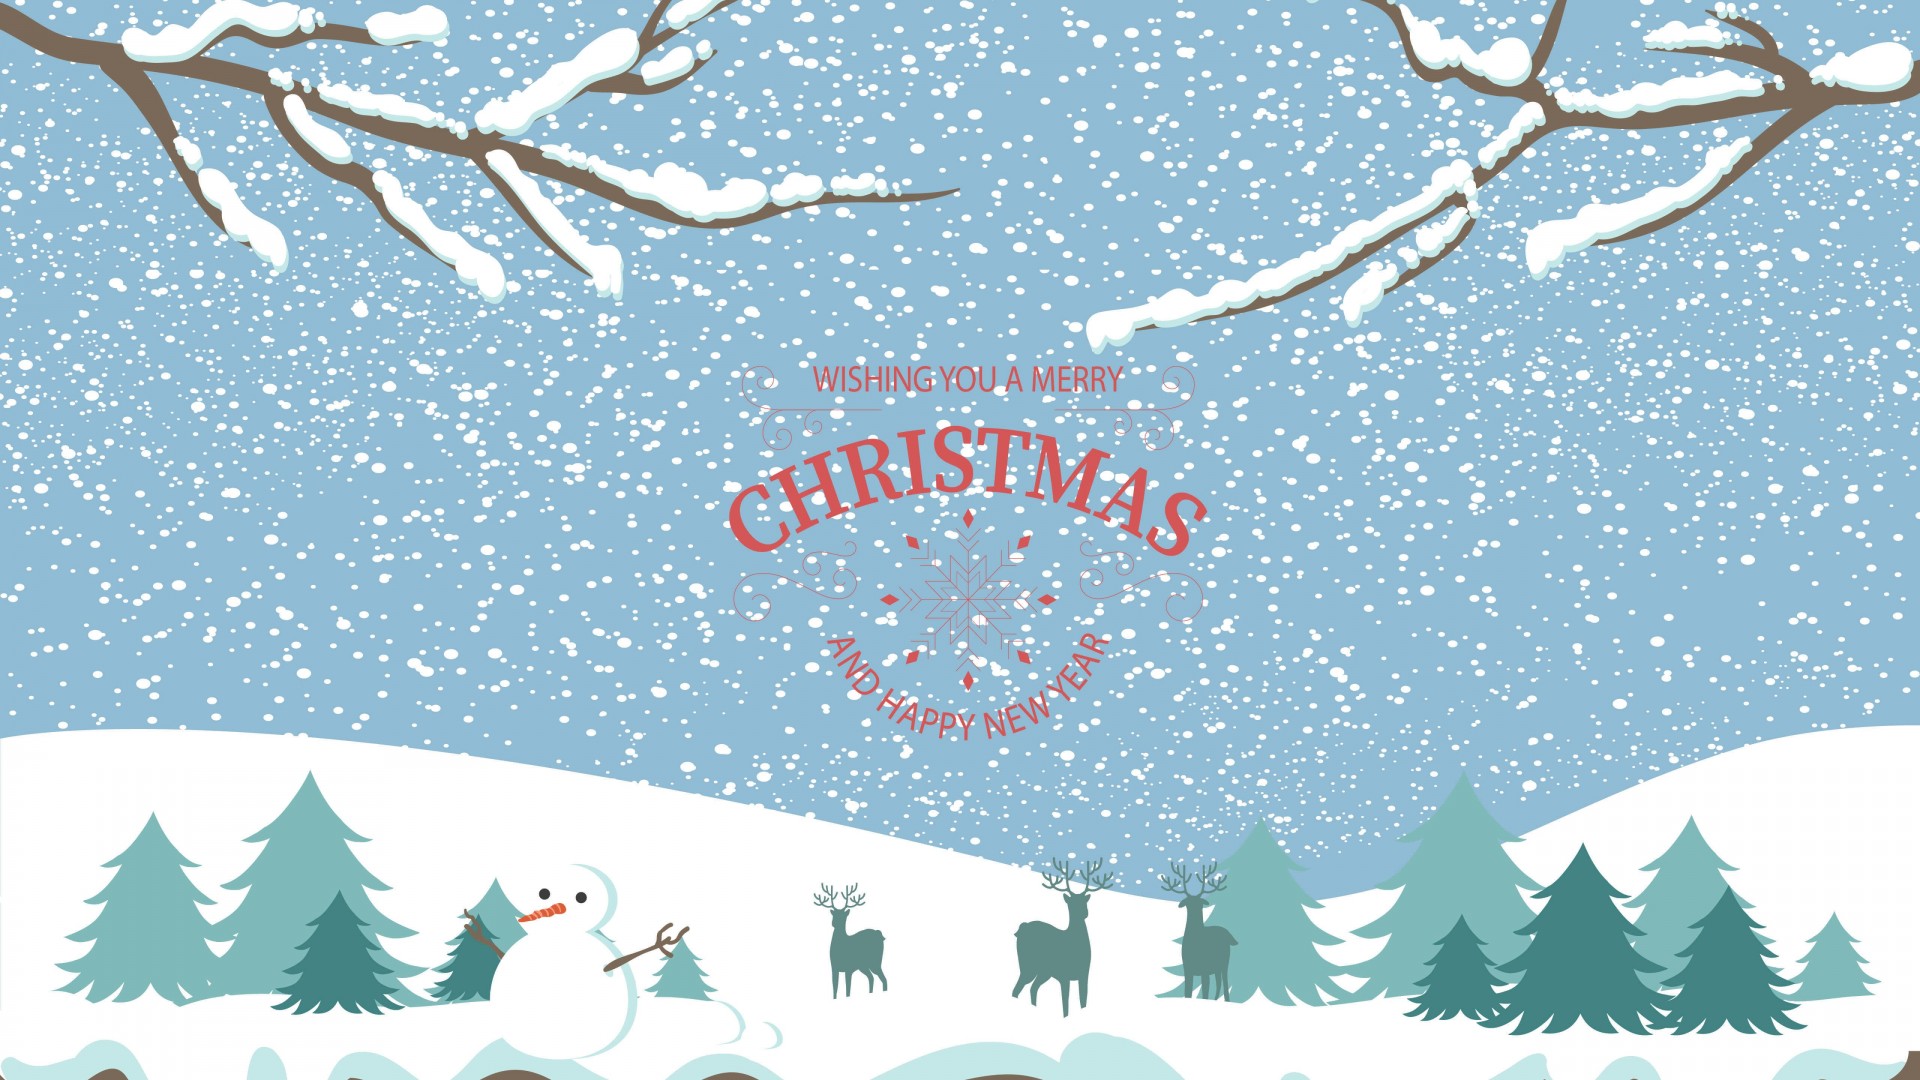 Merry Christmas Illustration Wallpaper for Desktop 1920x1080